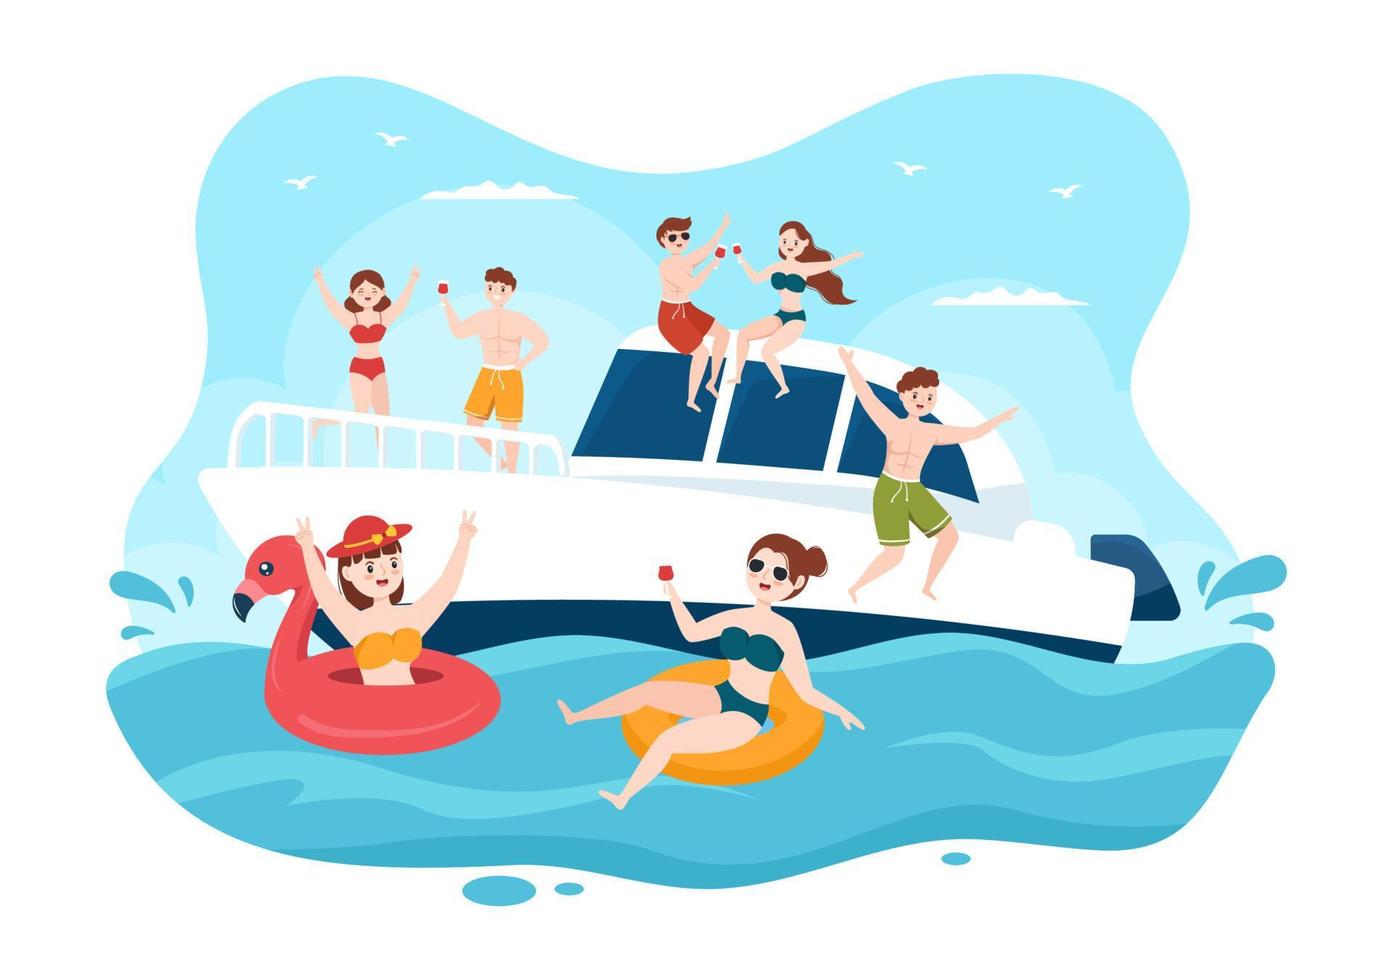 plantilla de yates dibujada a mano ilustración plana de dibujos animados con gente bailando, tomando el sol, bebiendo cócteles y relajándose en un yate de crucero en el océano vector